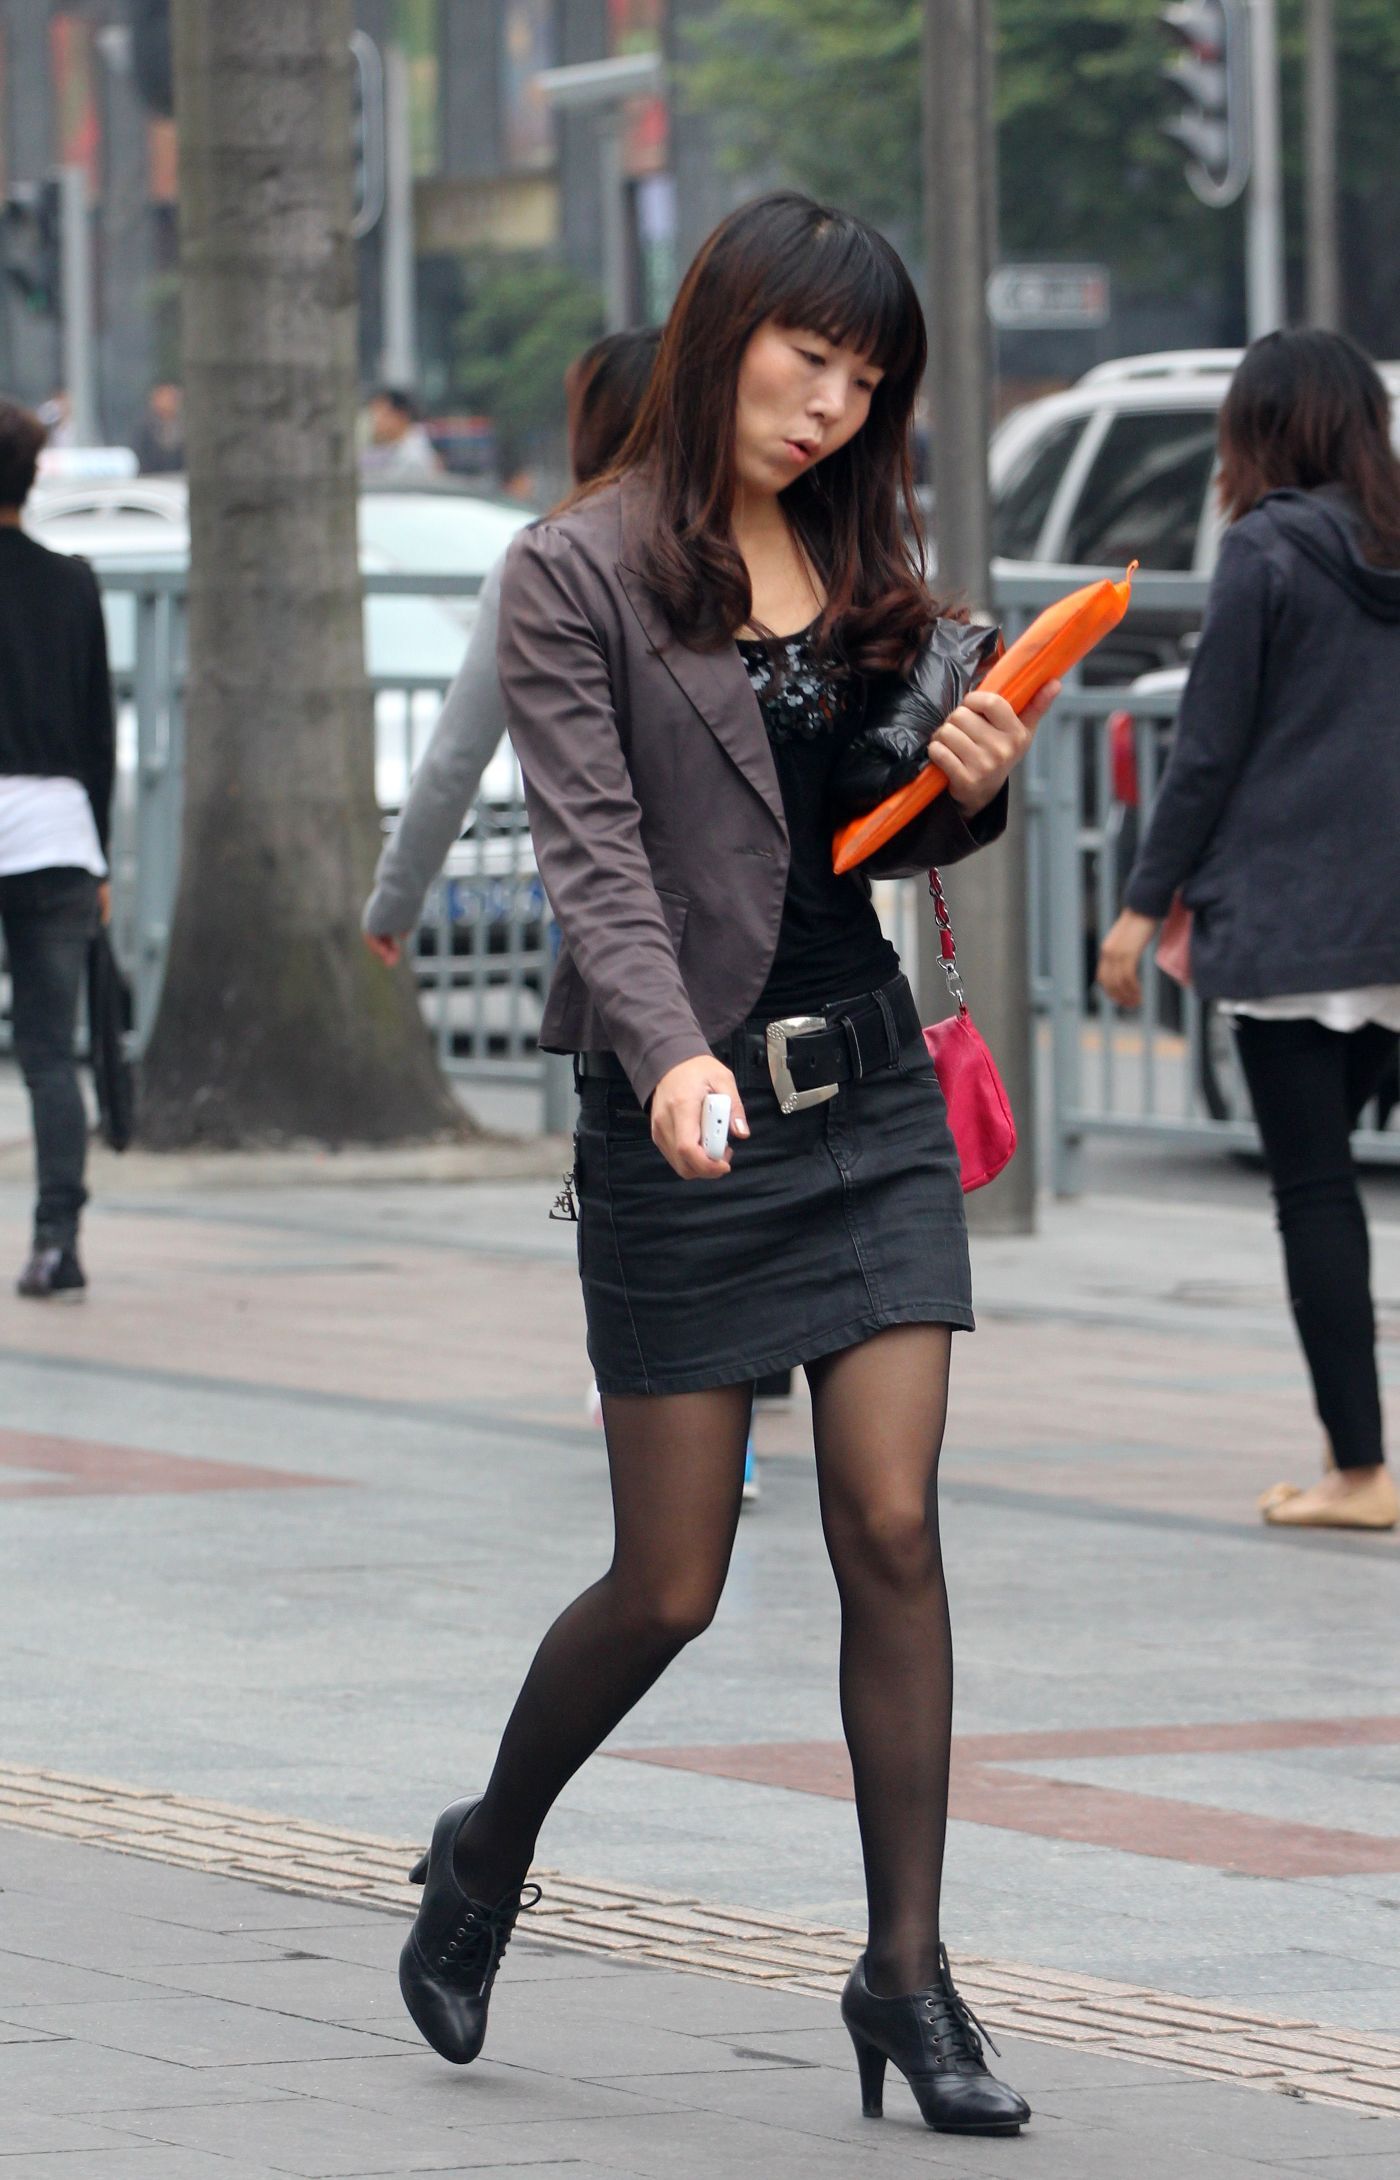 [户外街拍] 2013.12.01 短裙黑丝高跟的熟妇